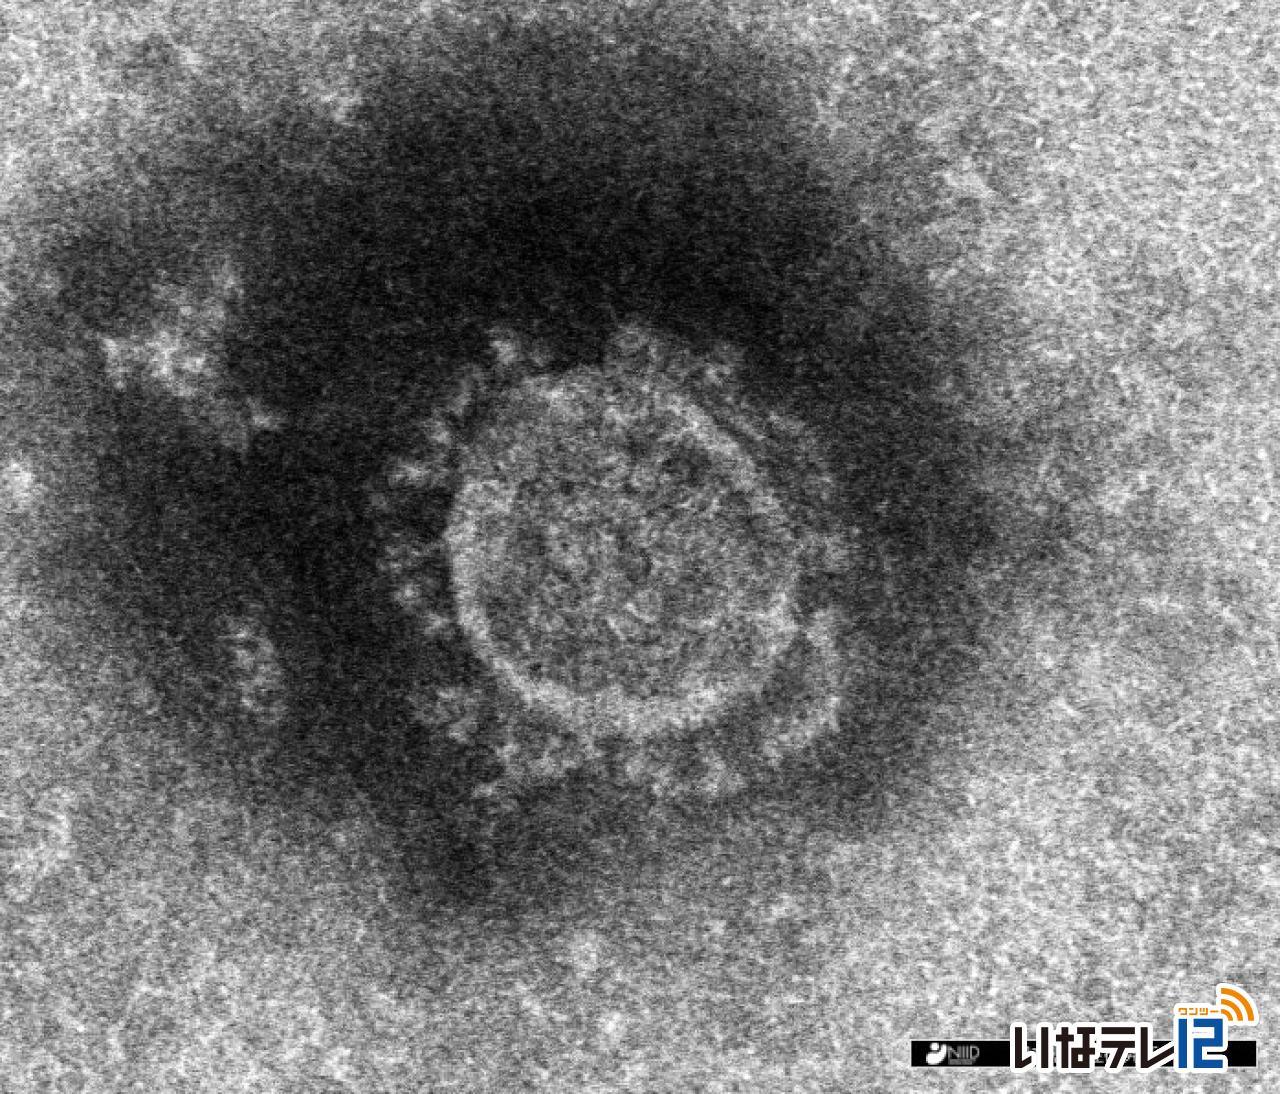 上伊那地域の７０人を含む５５９人の新型コロナウイルス感染確認